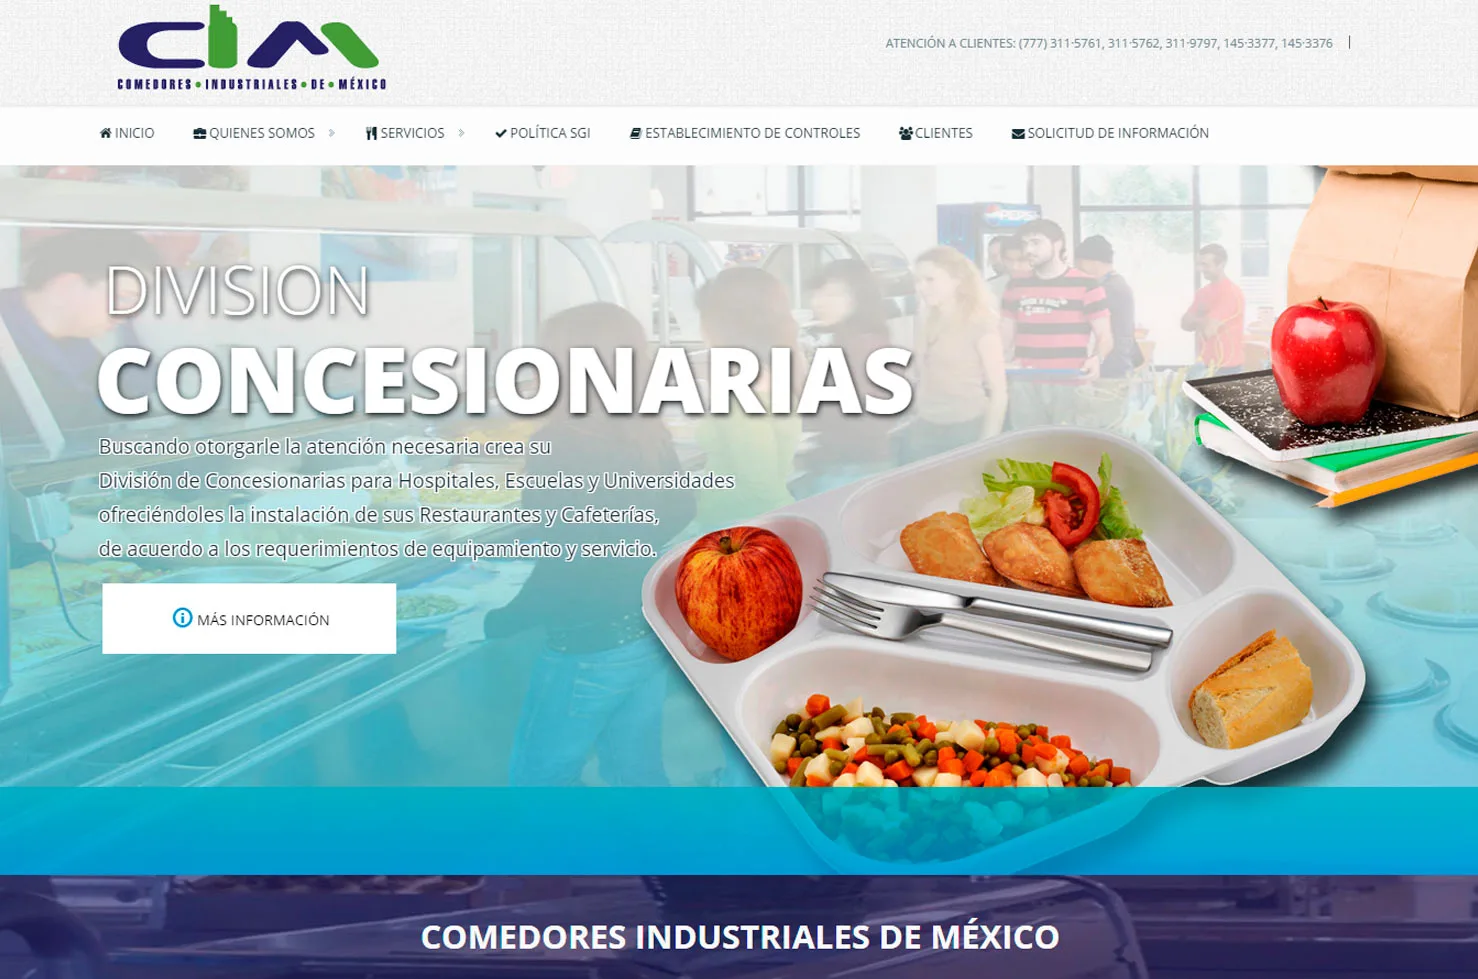 Comedores Industriales de Mexico